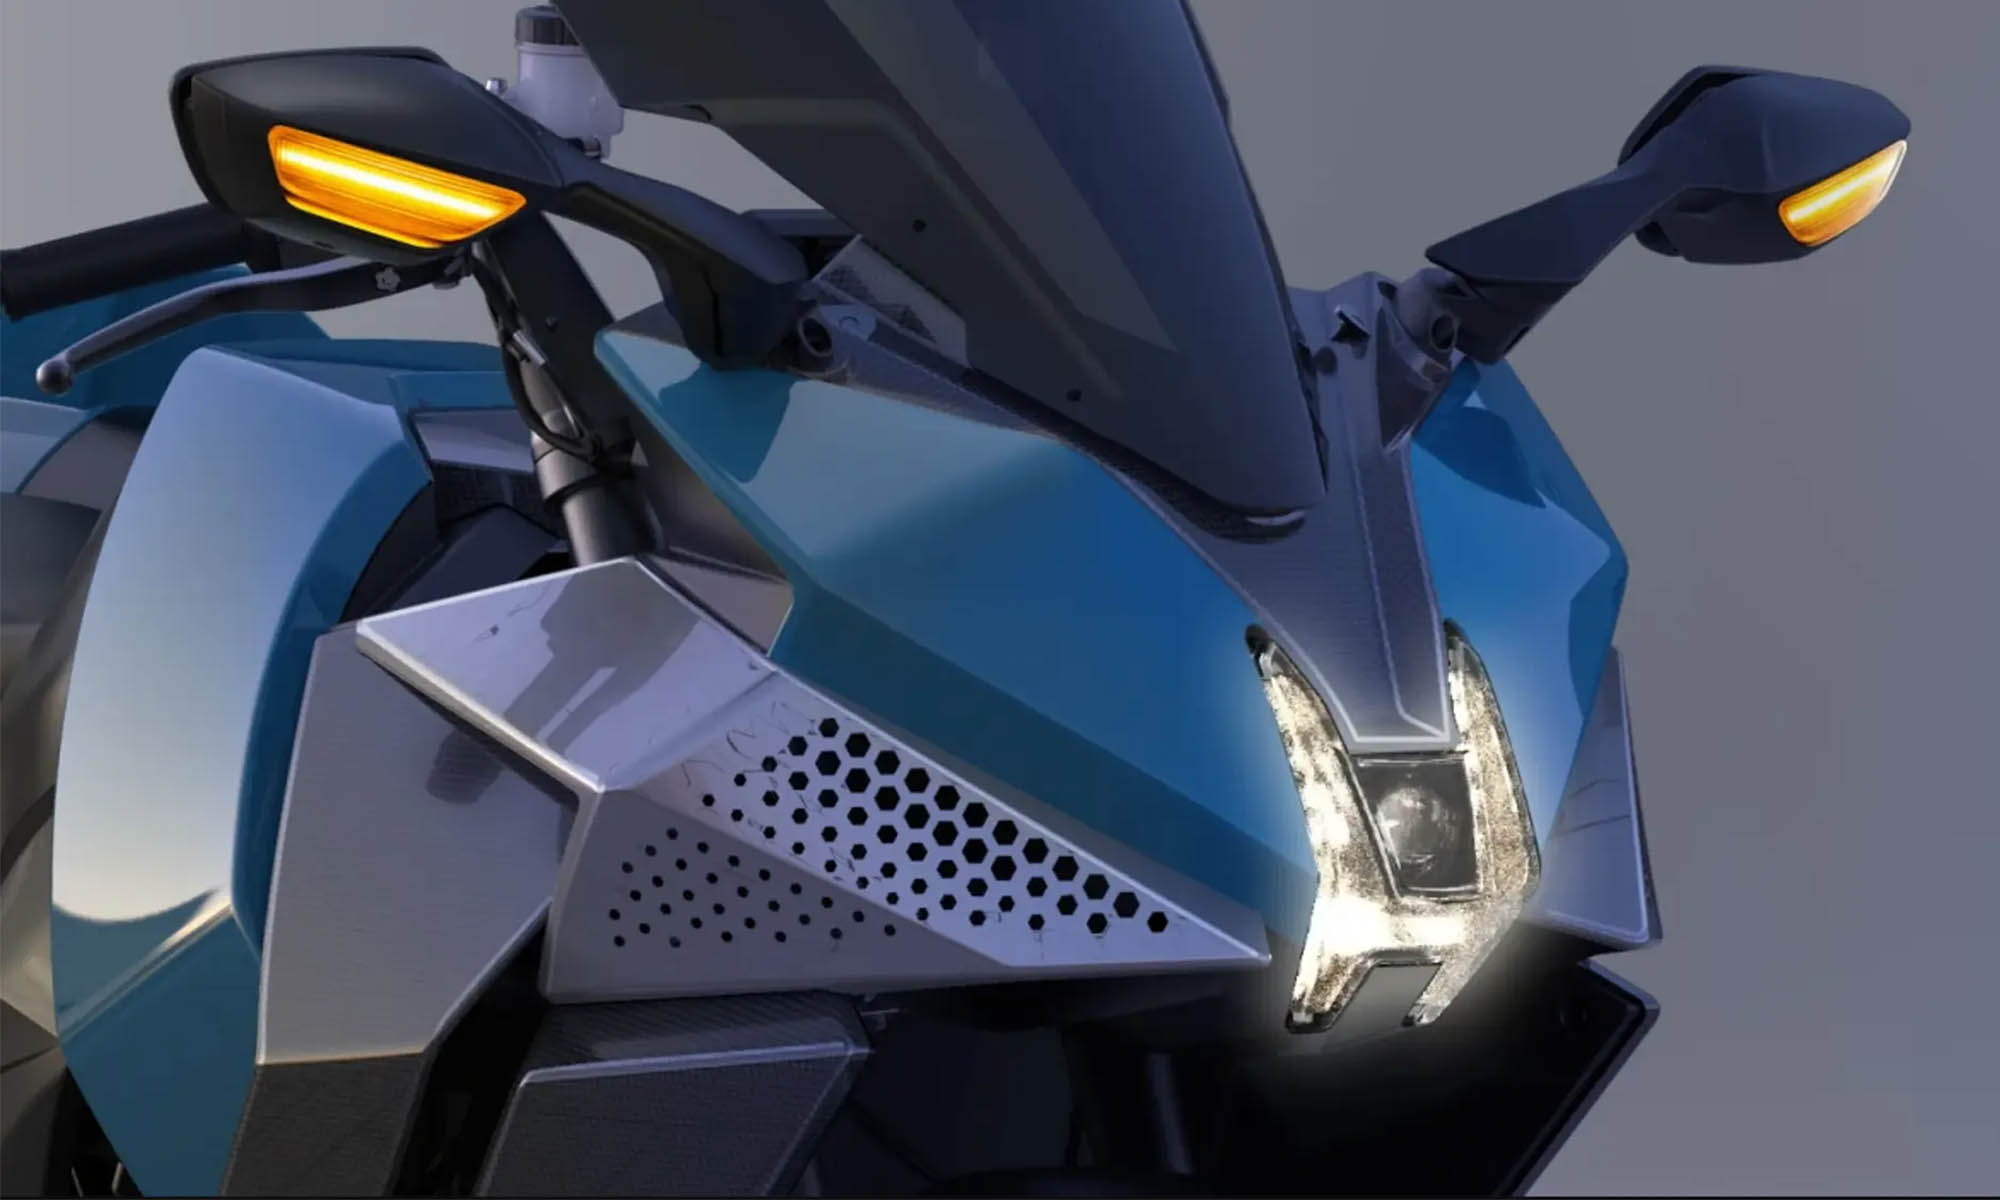 Un detalle de diseño: el faro en forma de H del frontal de esta motocicleta.